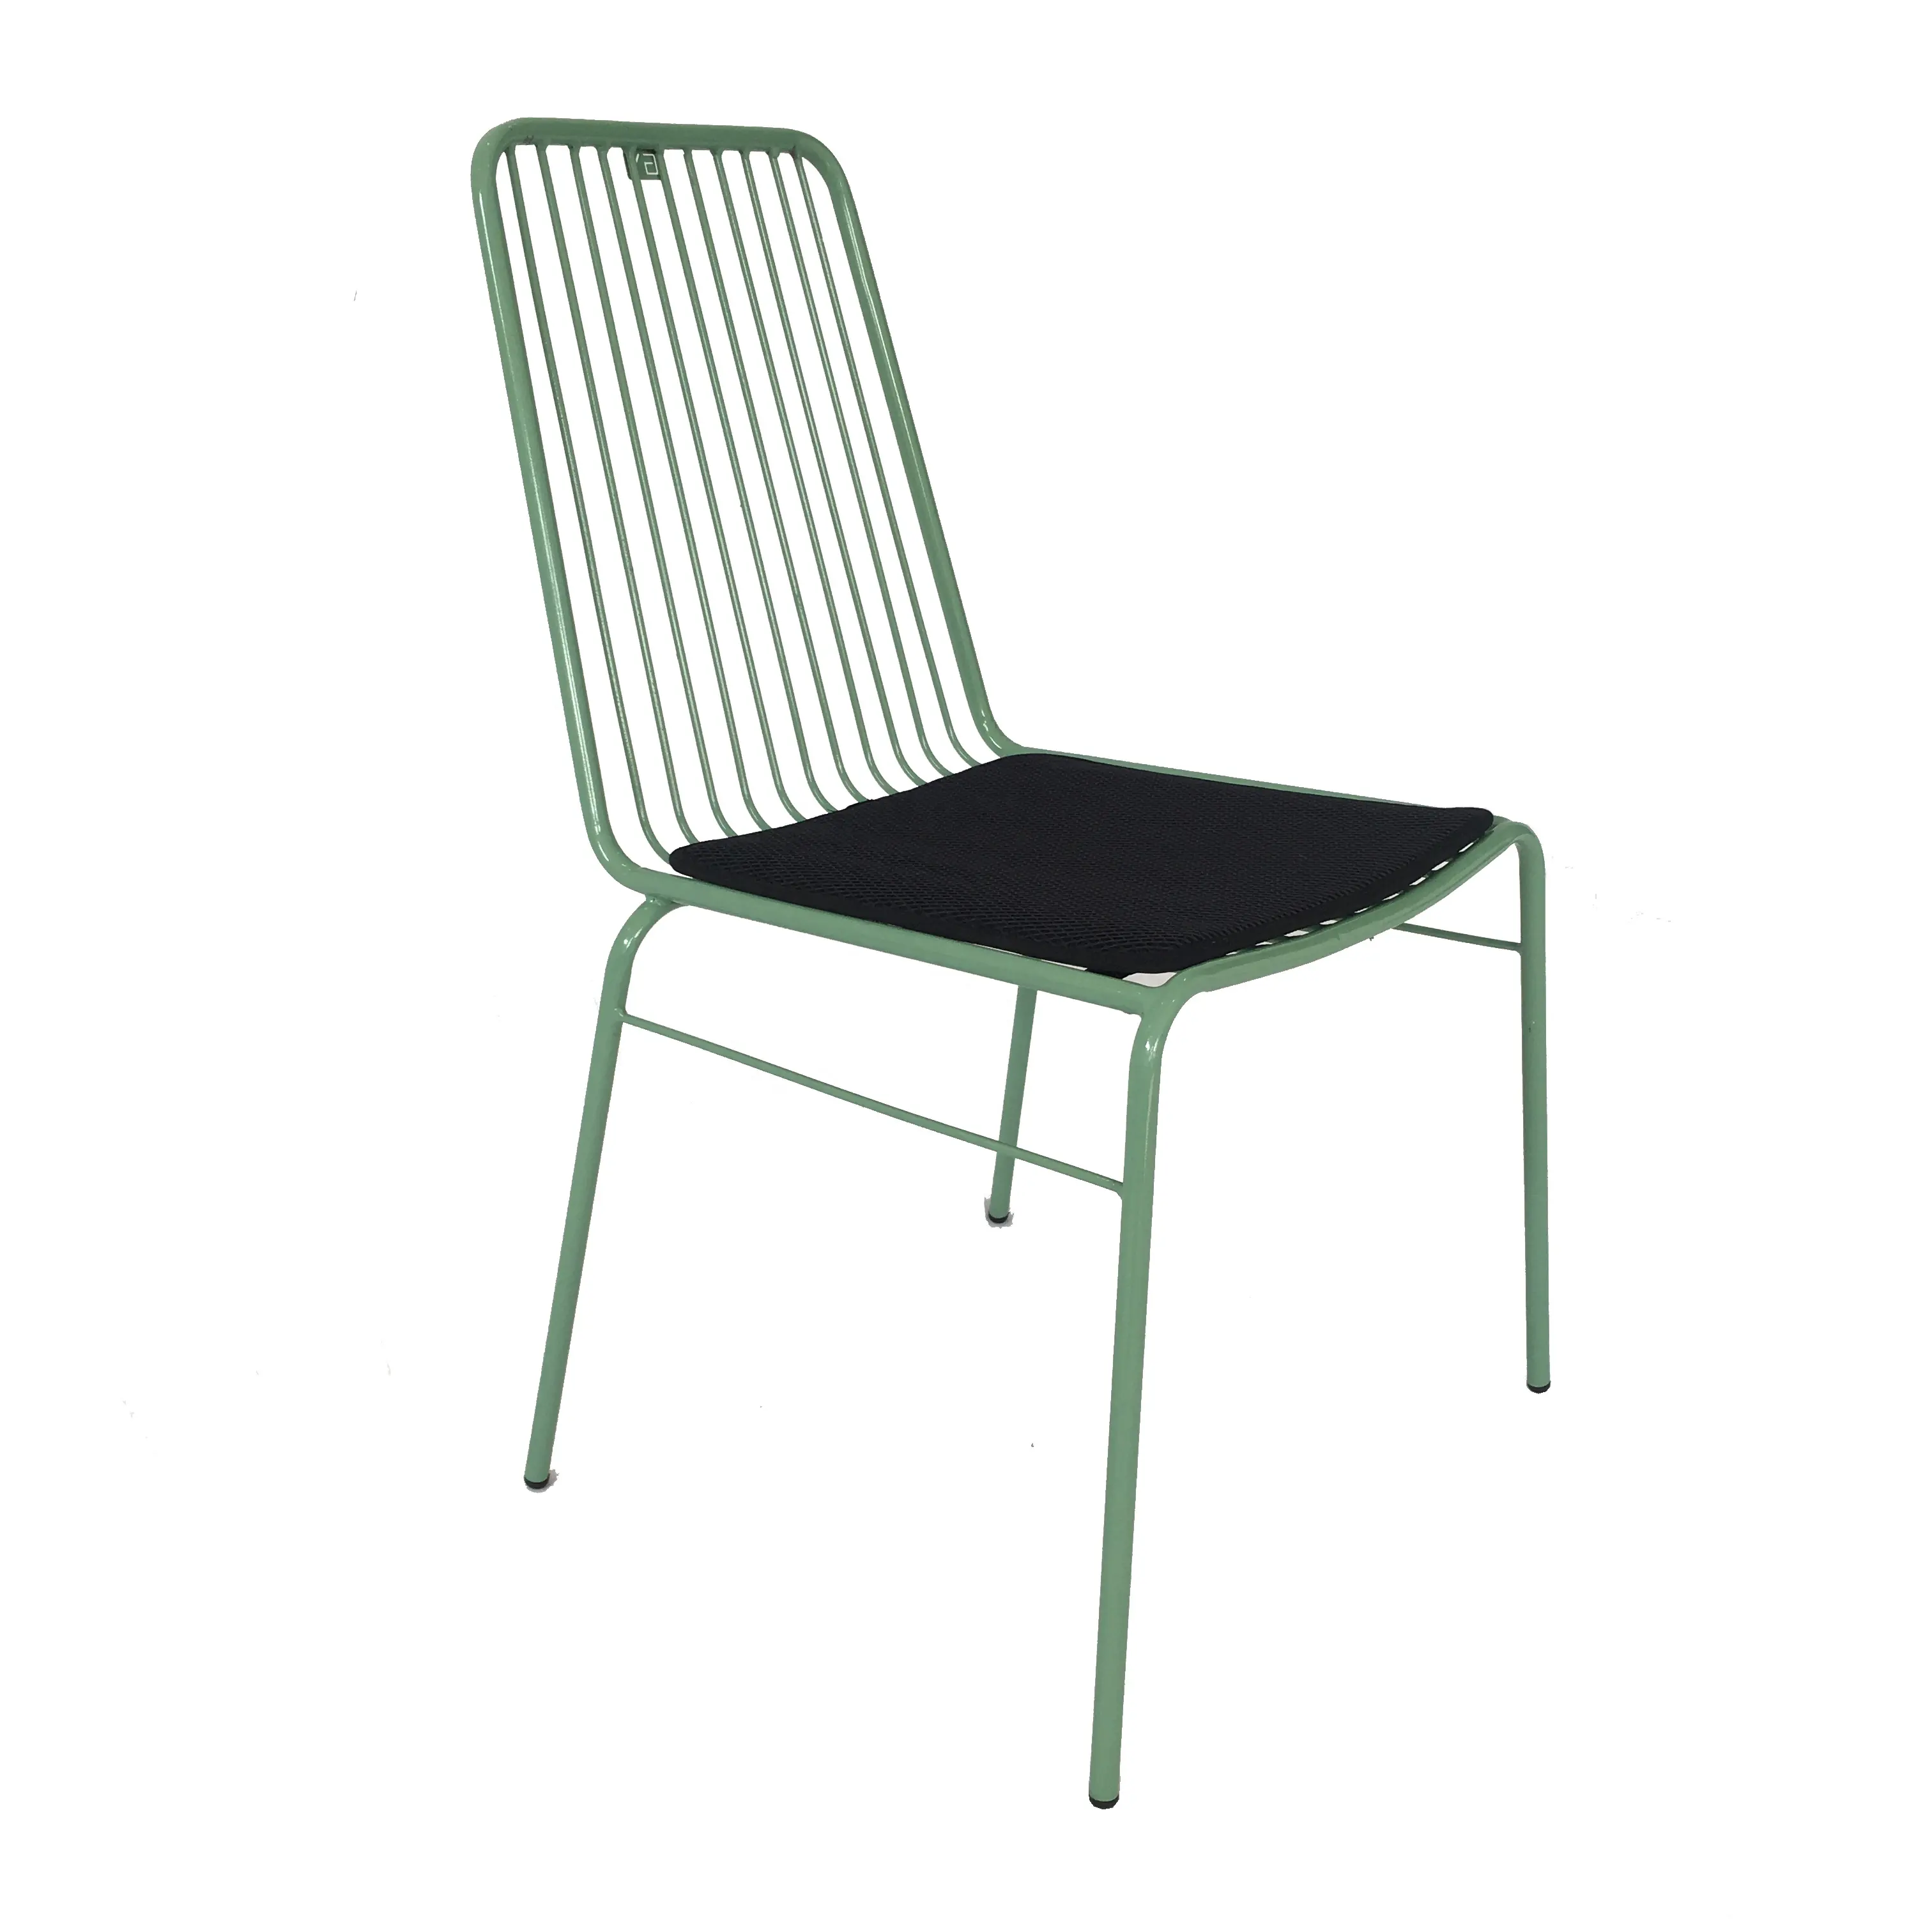 Basit tasarım mutfak mobilyası metal çelik çerçeve renk toz kaplı yemek sandalye